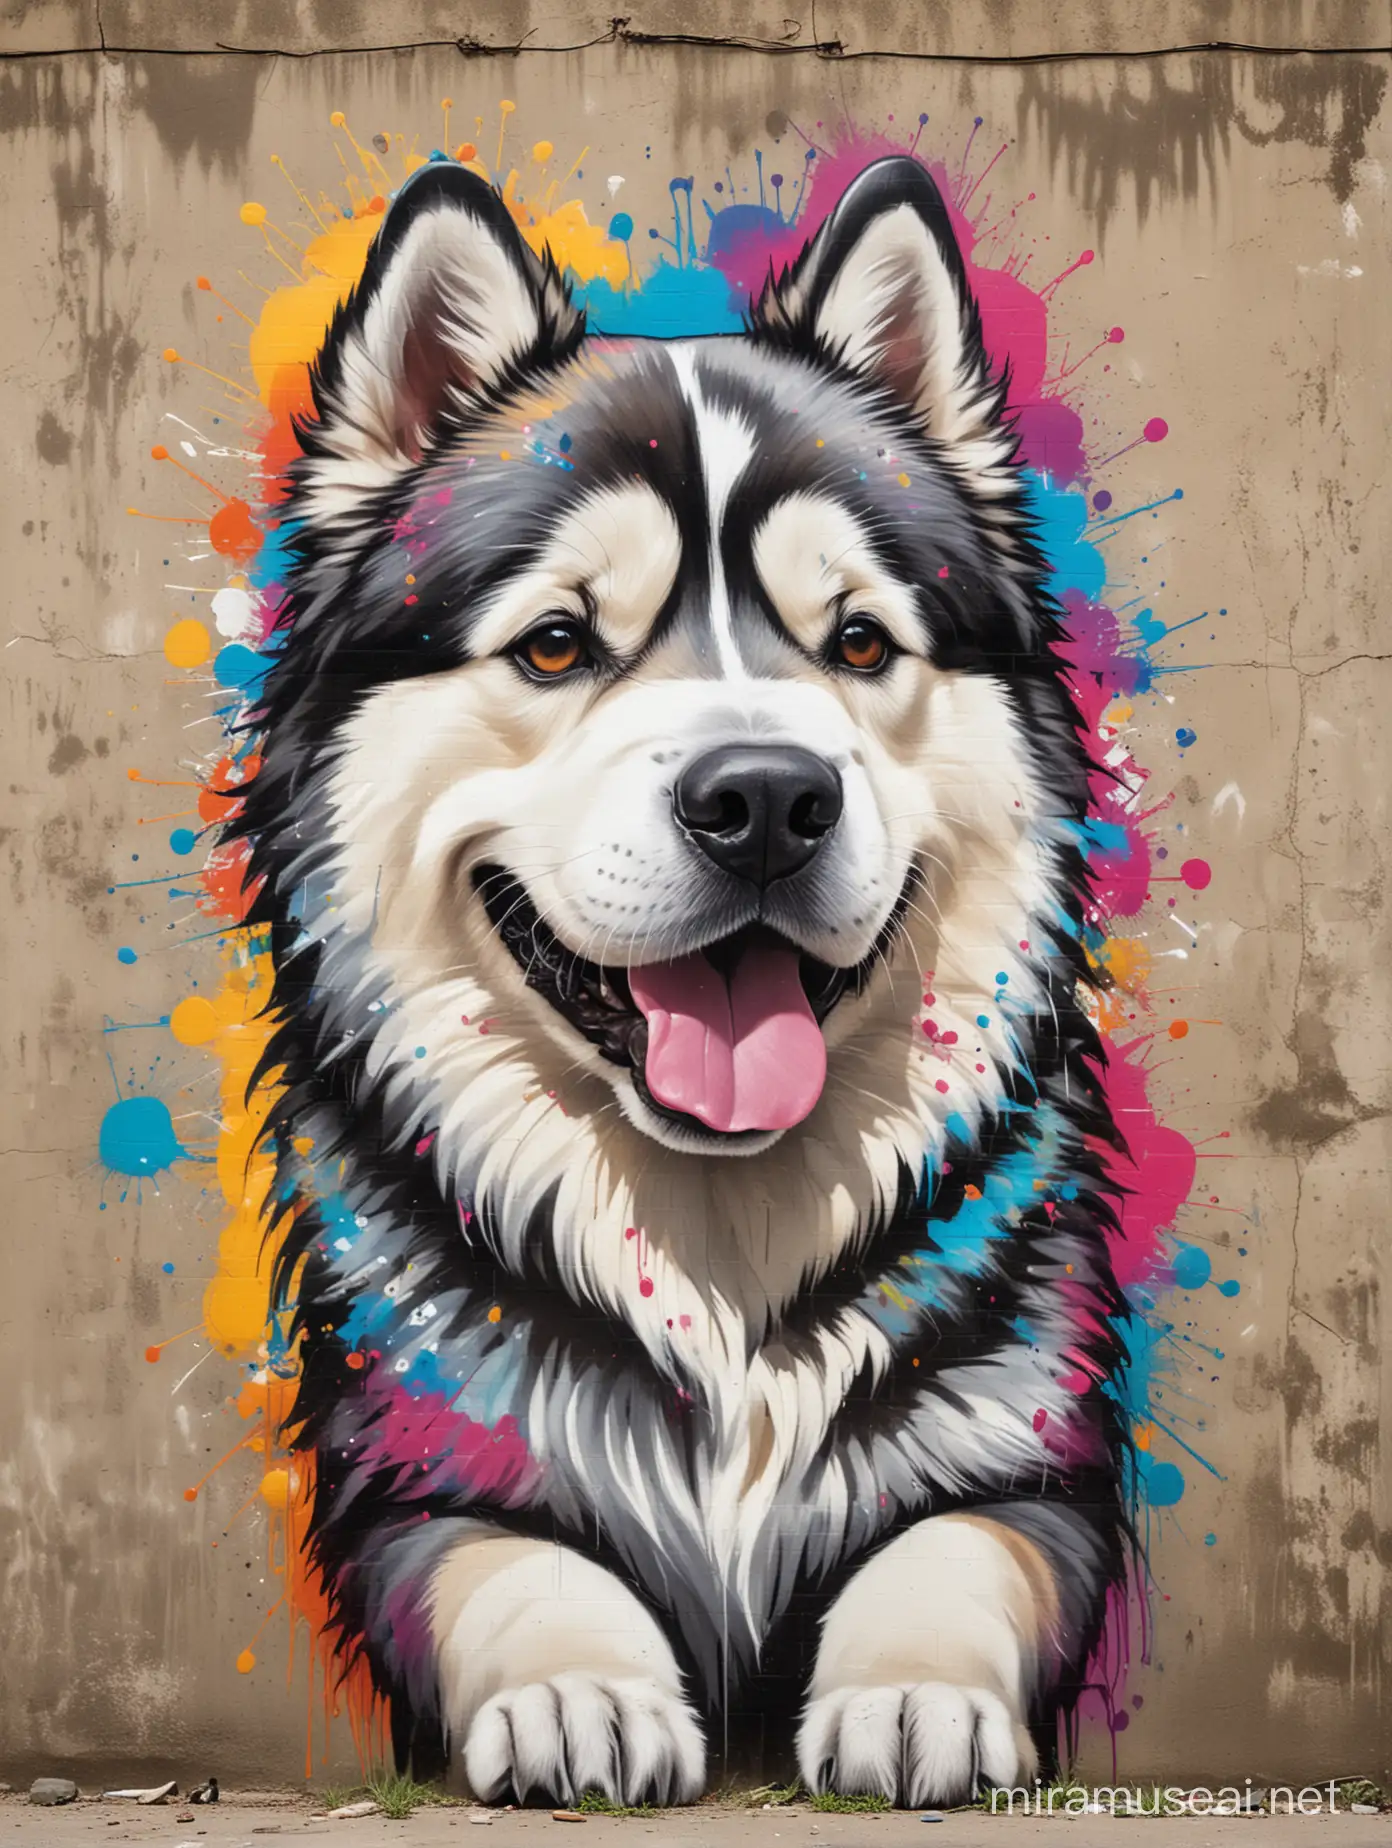 Colorful Graffiti Art Joyful Alaskan Malamute Dog in Rustic Setting